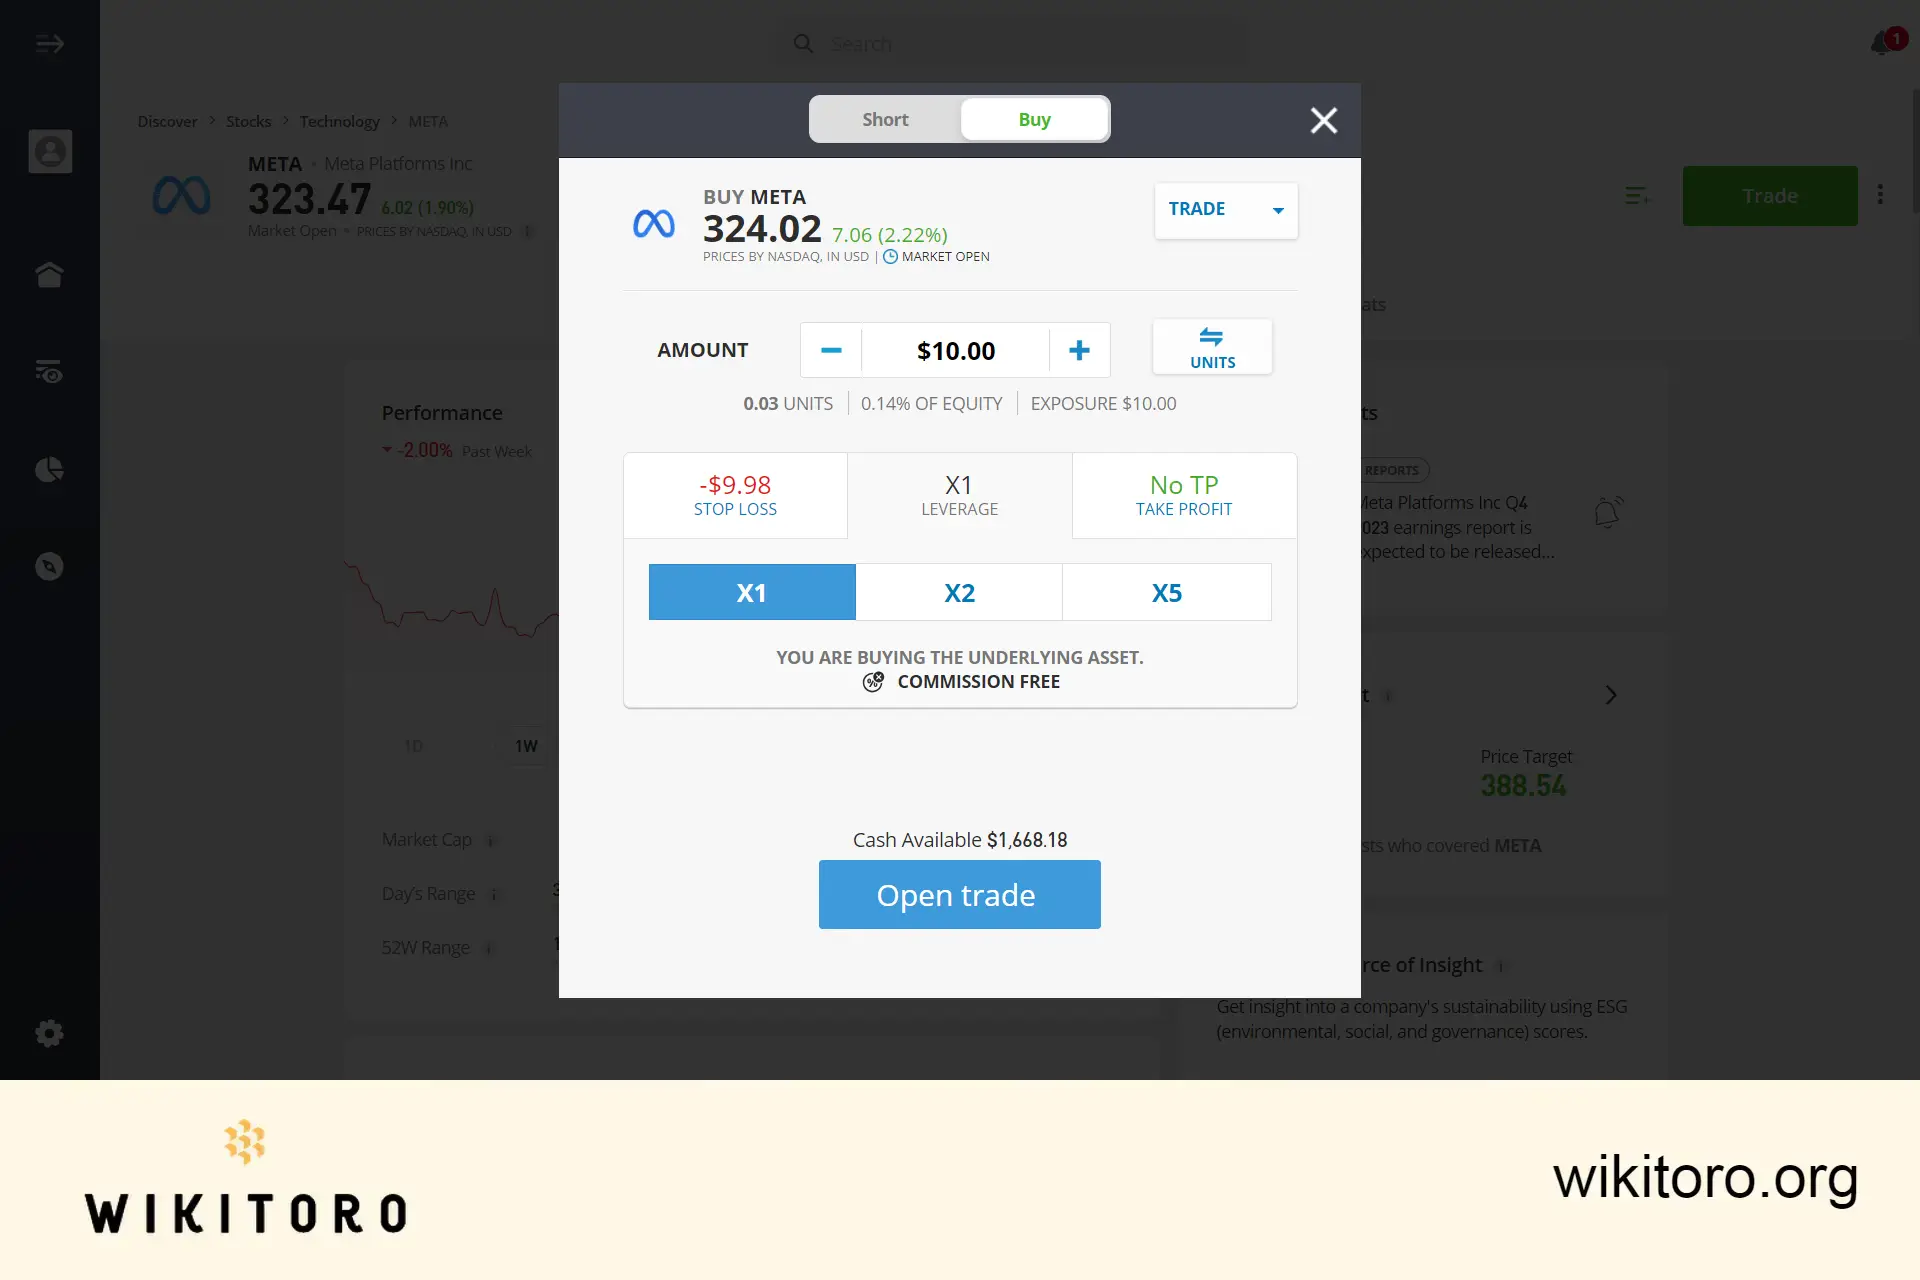 Buying Meta stock on eToro